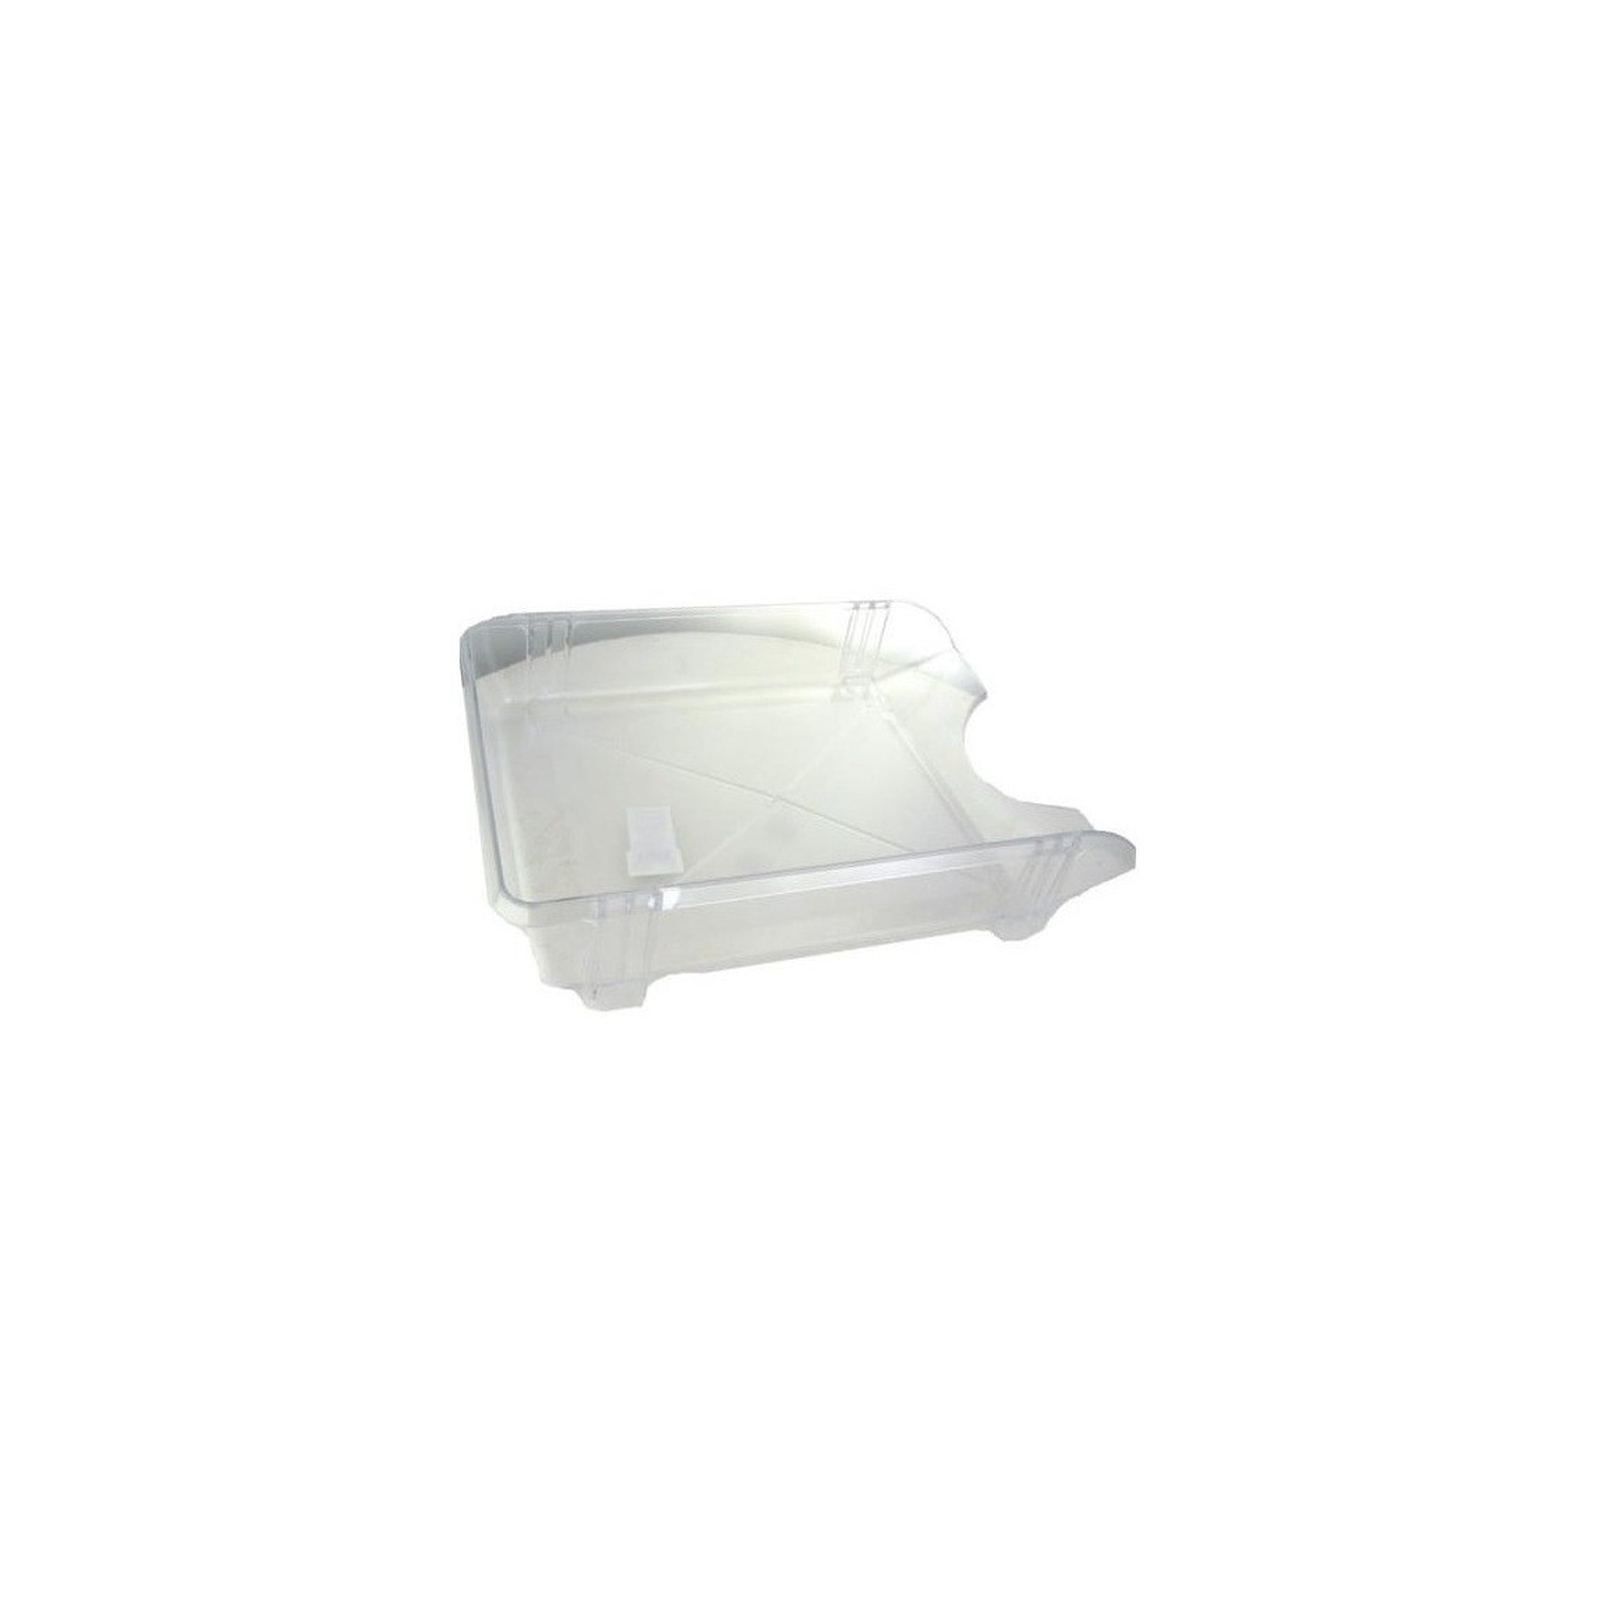 Лоток для бумаг Economix горизонтальный пластик, прозрачный (E31803-00)